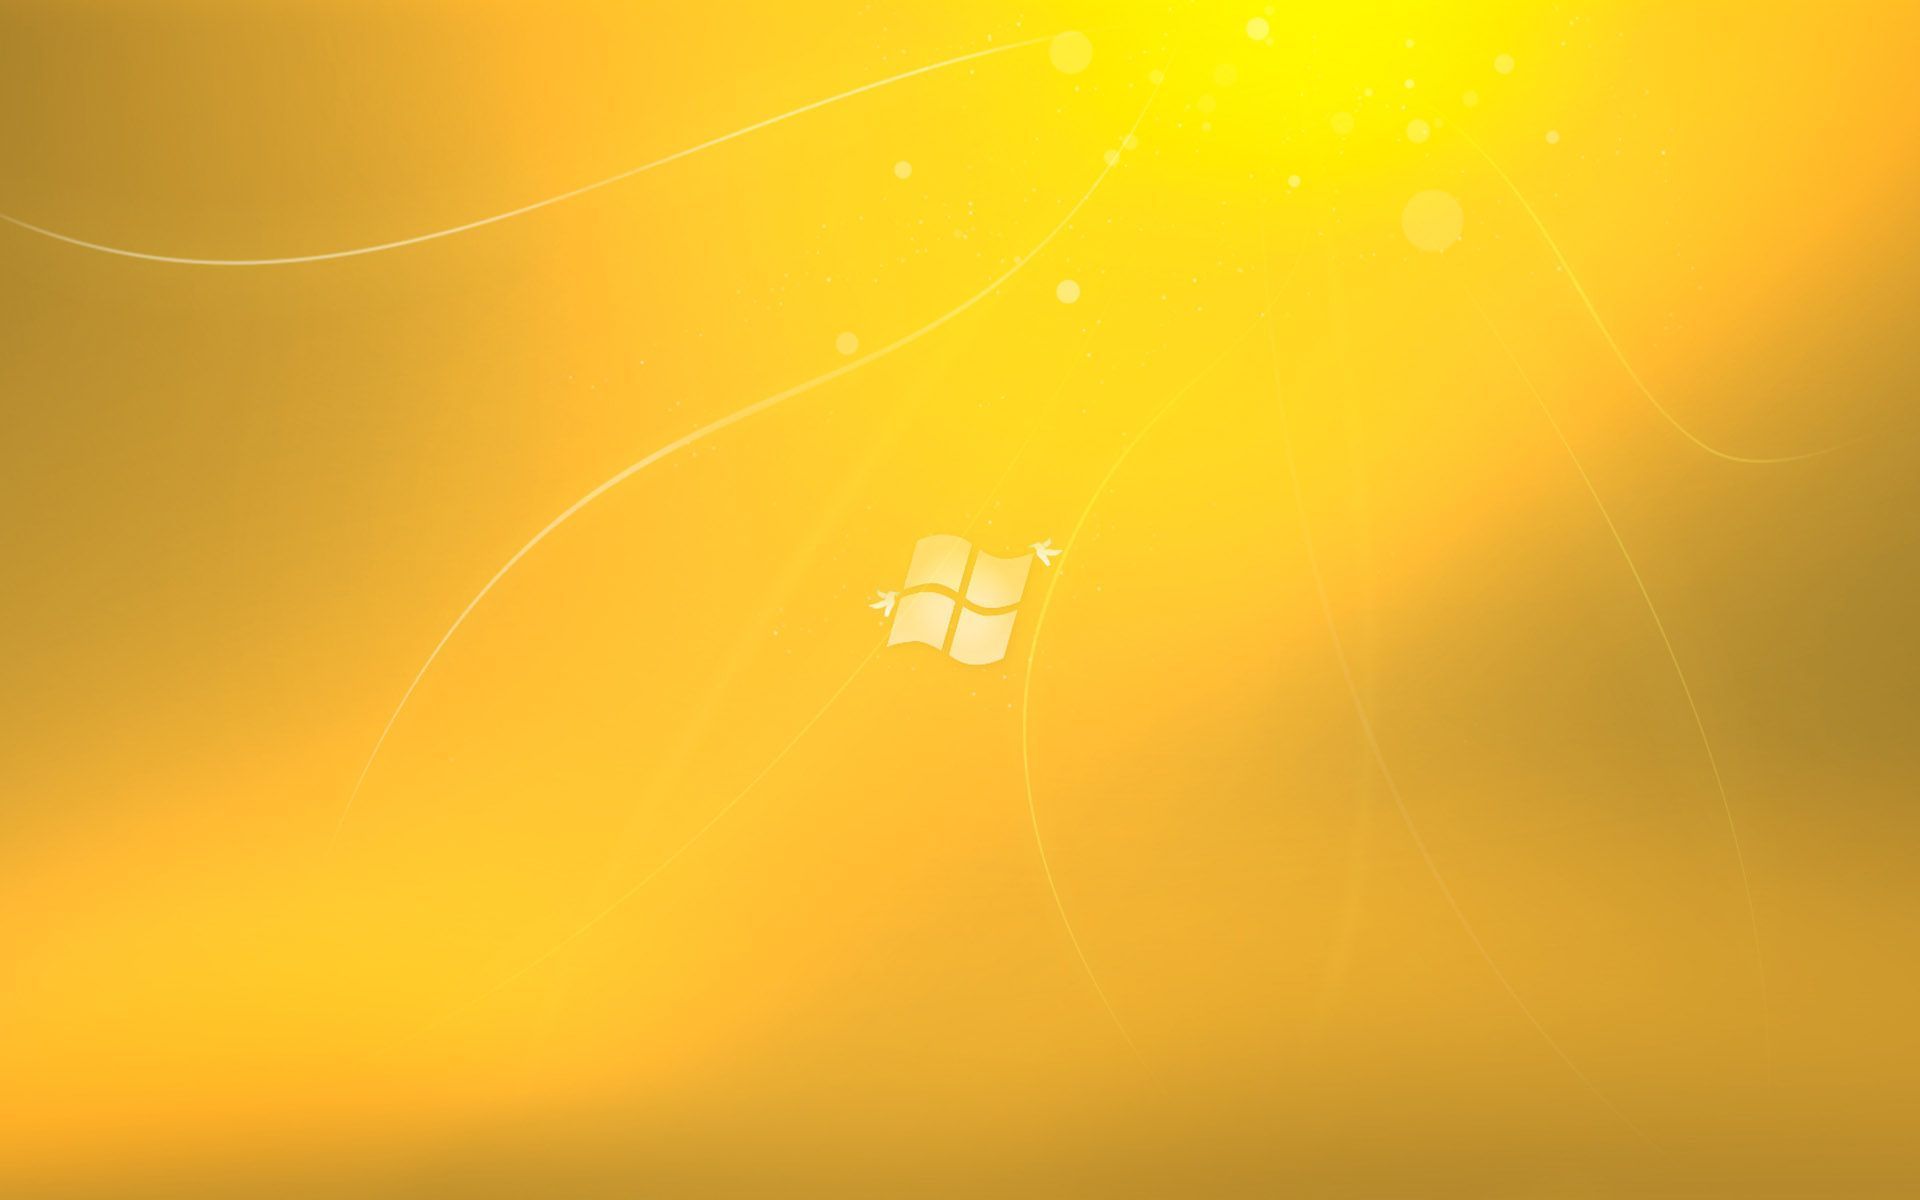 vijay fonds d'écran hd pour windows 7,jaune,orange,vert,ciel,jour